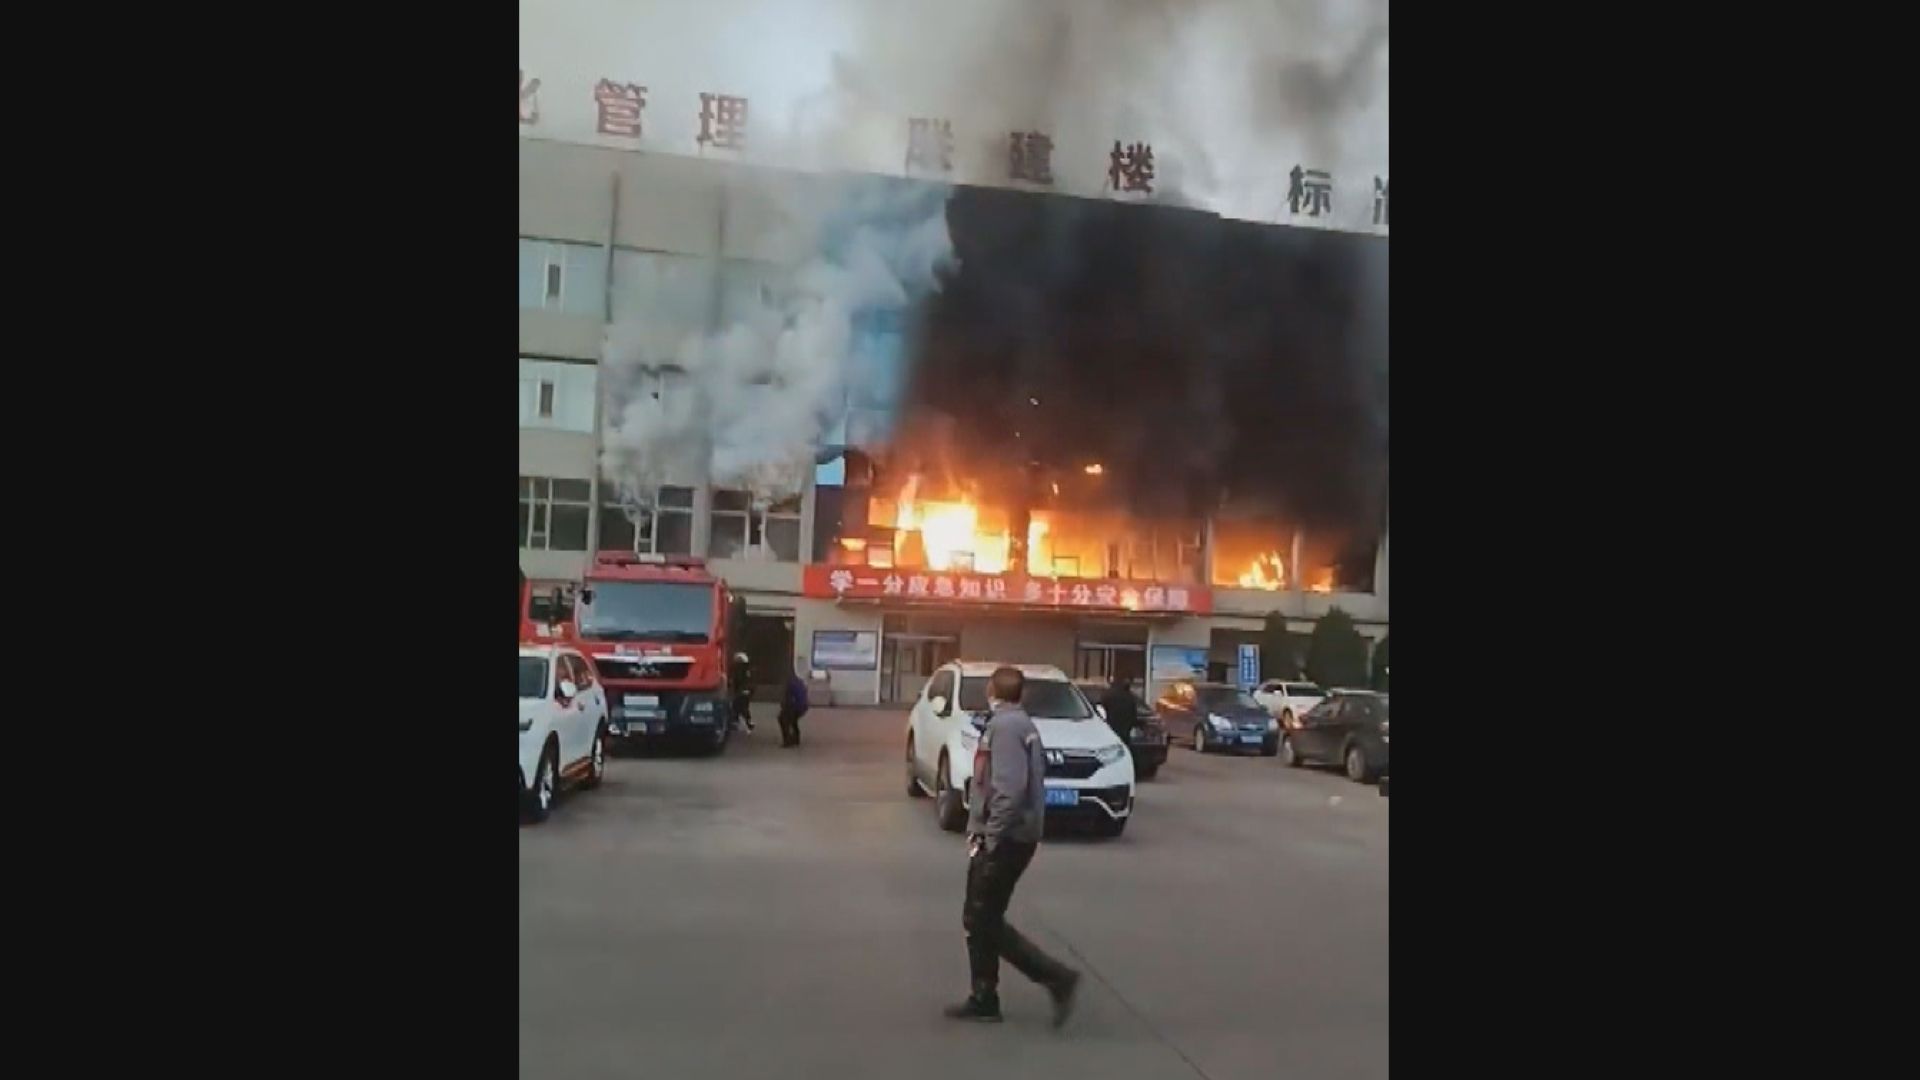 山西呂梁市一幢四層高建築大火 至少25人死亡